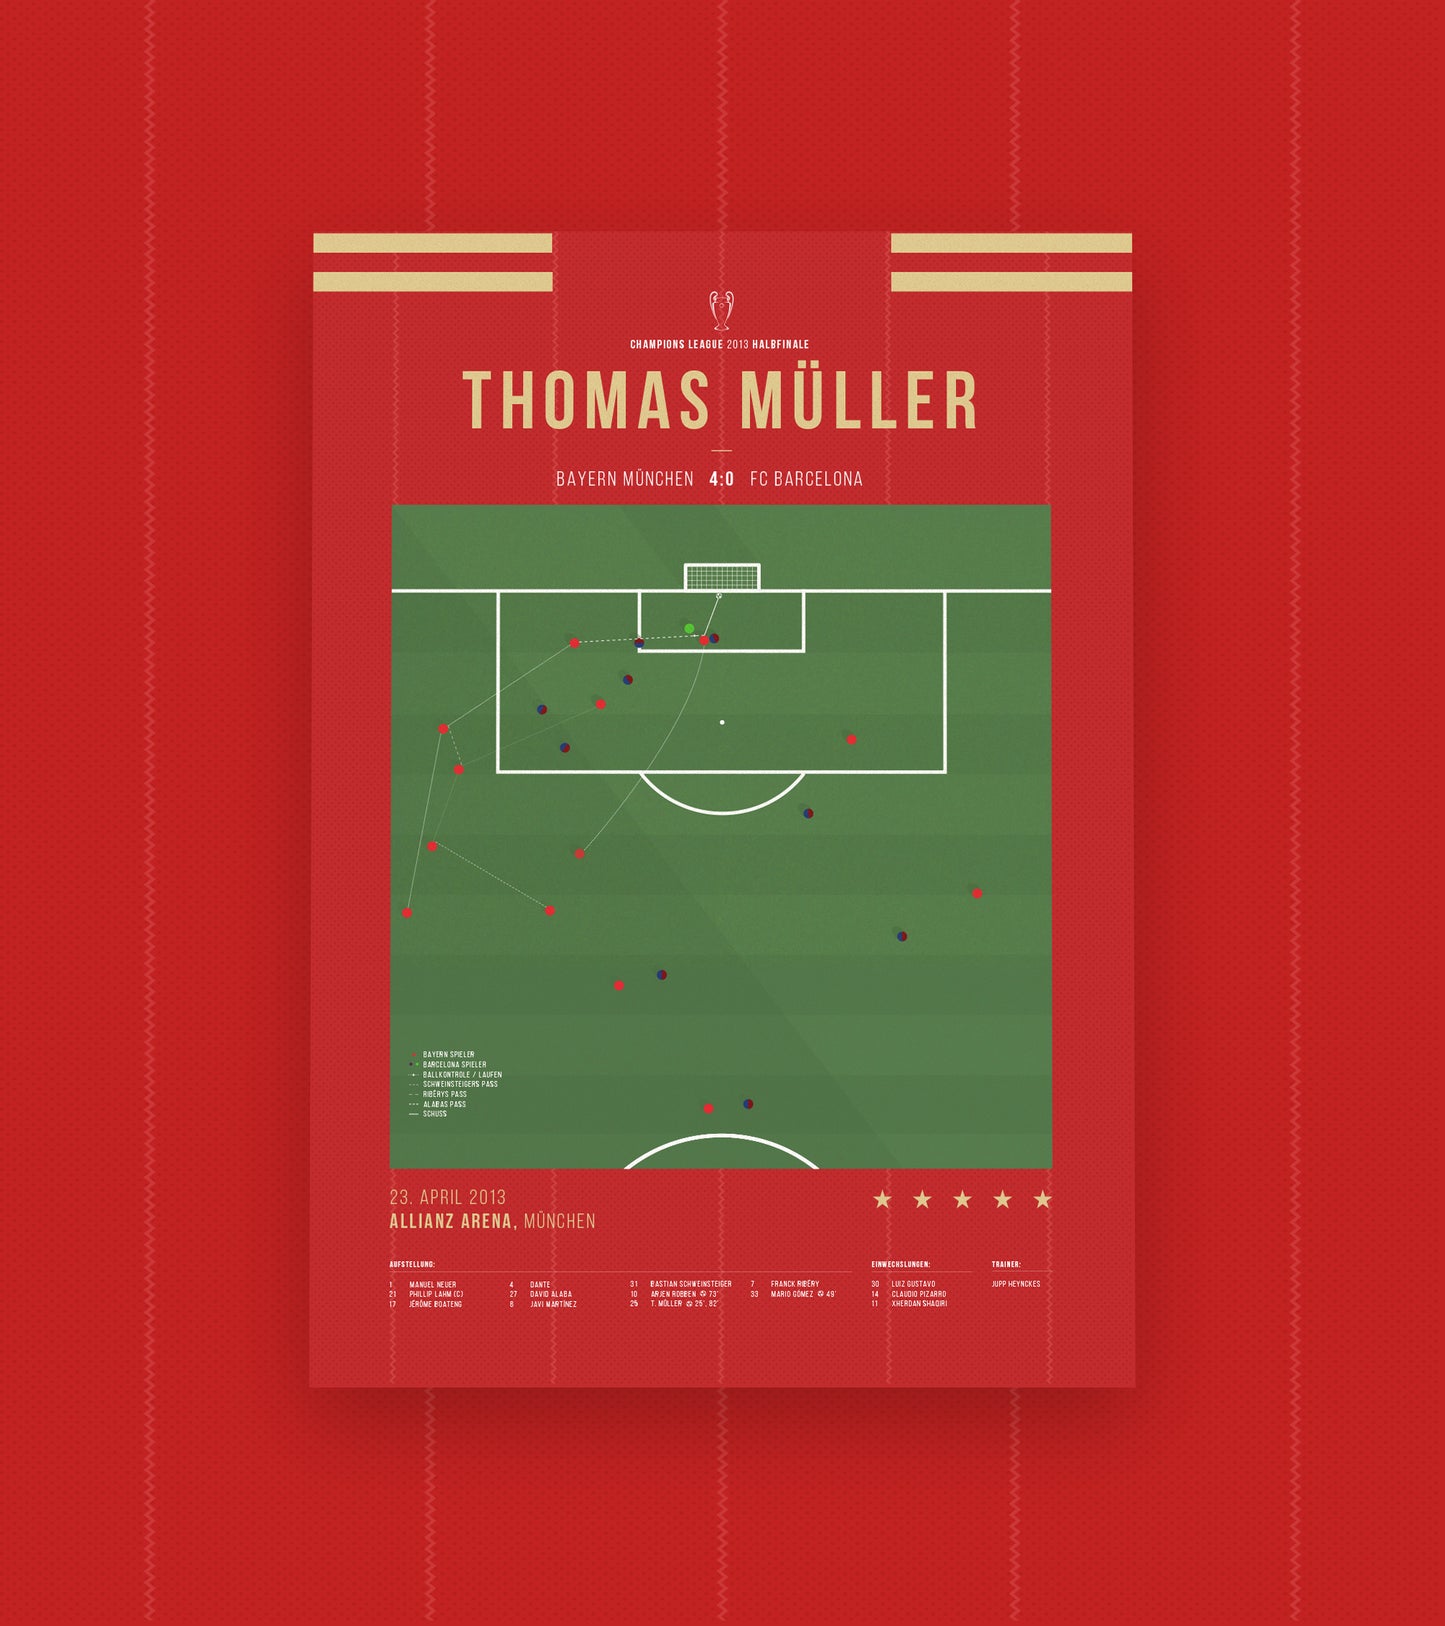 Le but de Müller : la victoire historique 7-0